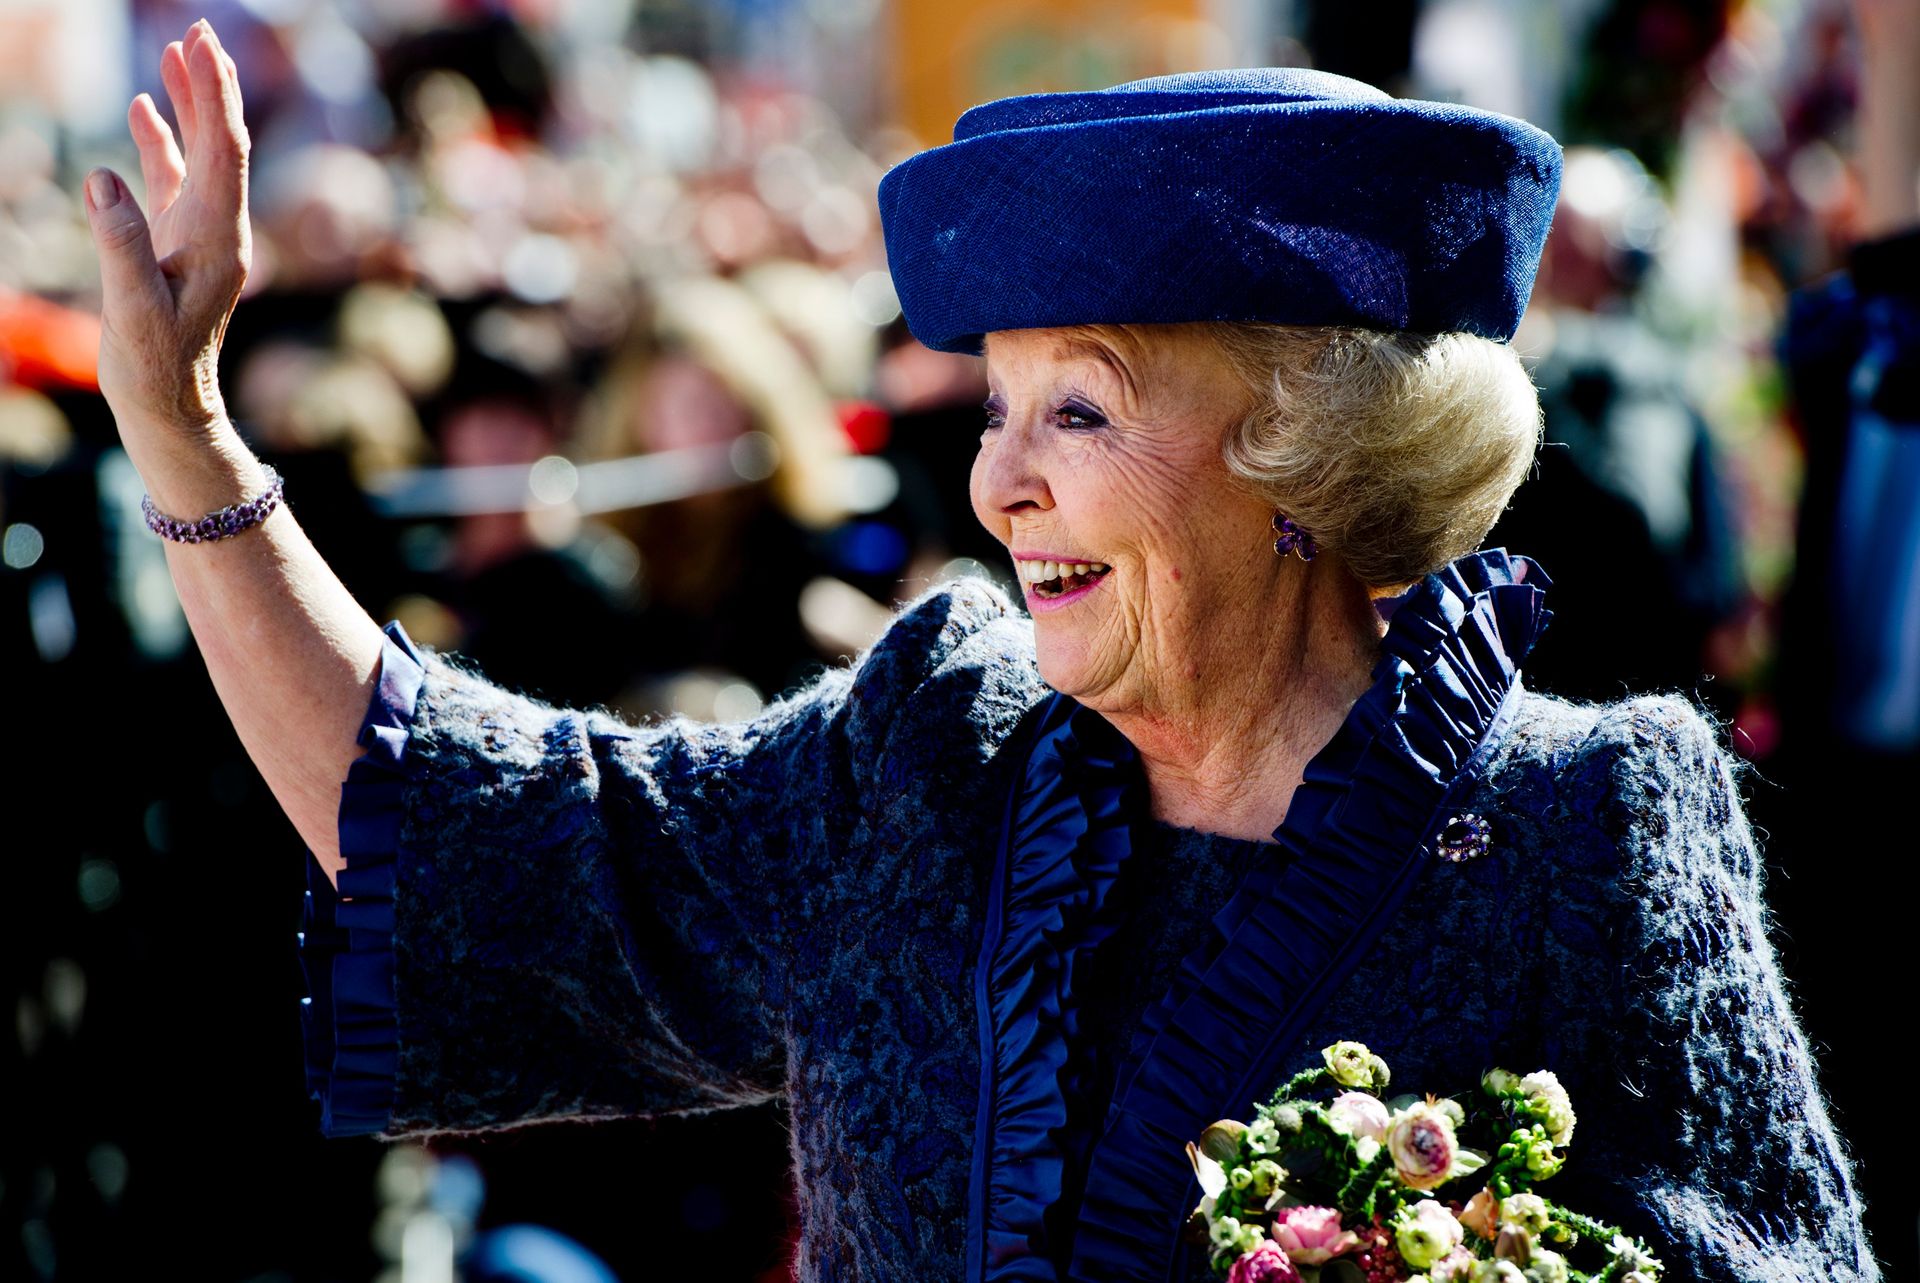 Koninginnedag 2012 in Rhenen en Veenendaal. De laatste koninginnedag van koningin Beatrix.